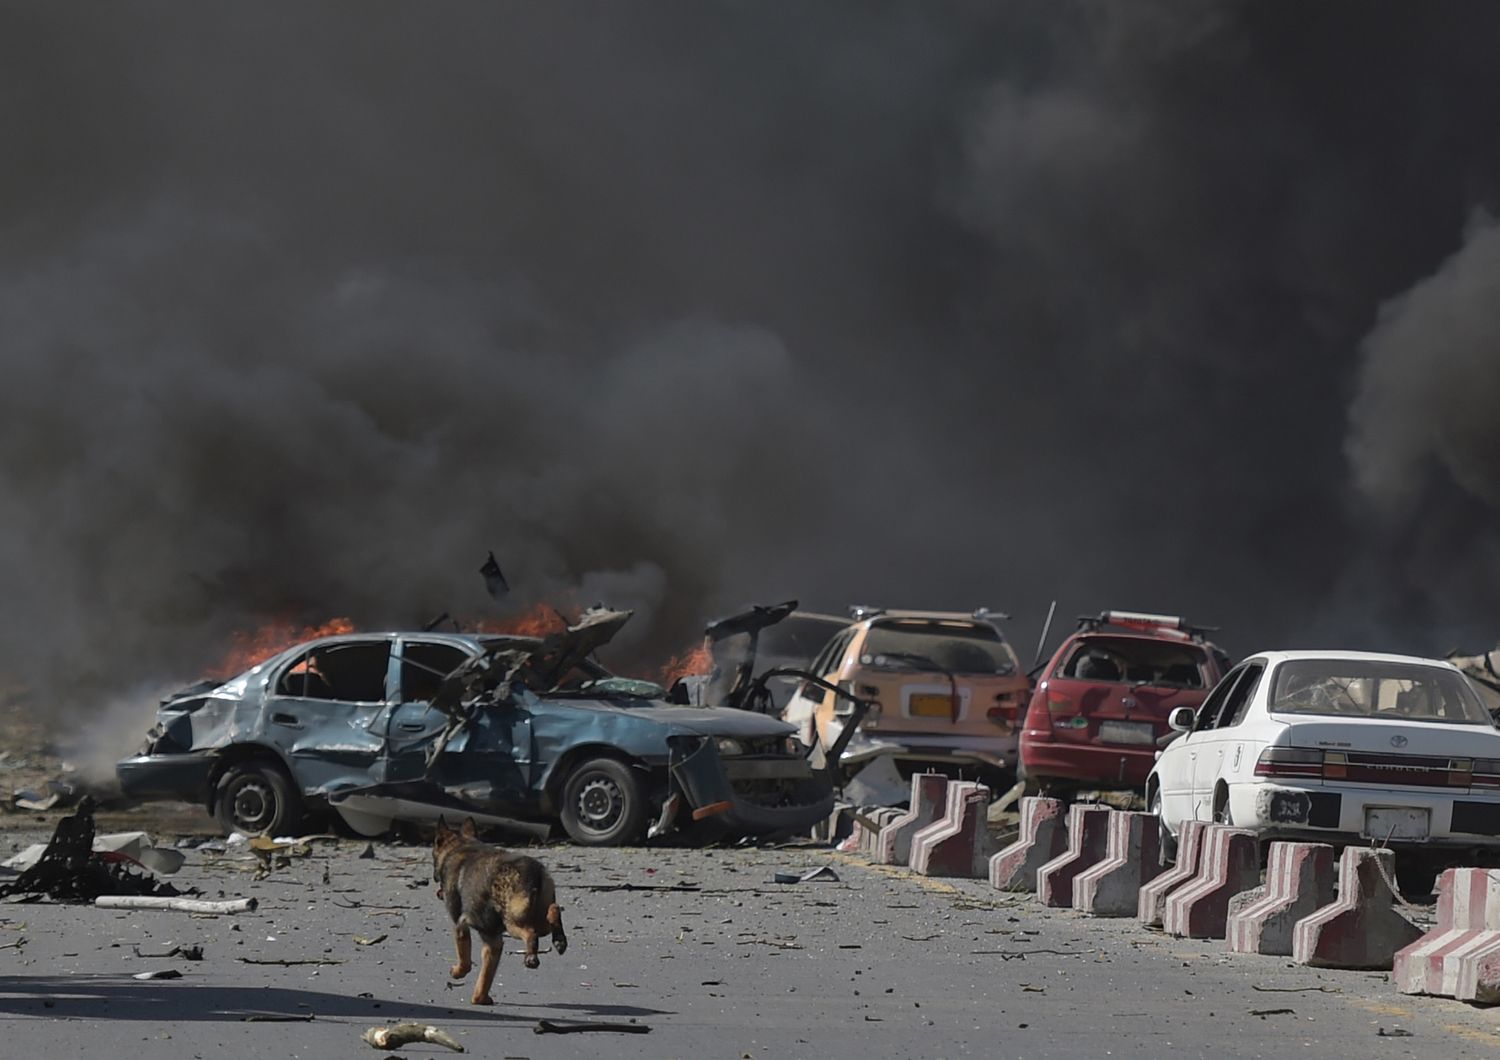 Autobomba a Kabul nel quartiere delle ambasciate. Sale a 80 morti ed a pi&ugrave; di 350 feriti, il bilancio dell'attacco. Intanto si viene a sapere che risultano danneggiate le ambasciate di Francia e Germania. (Afp)